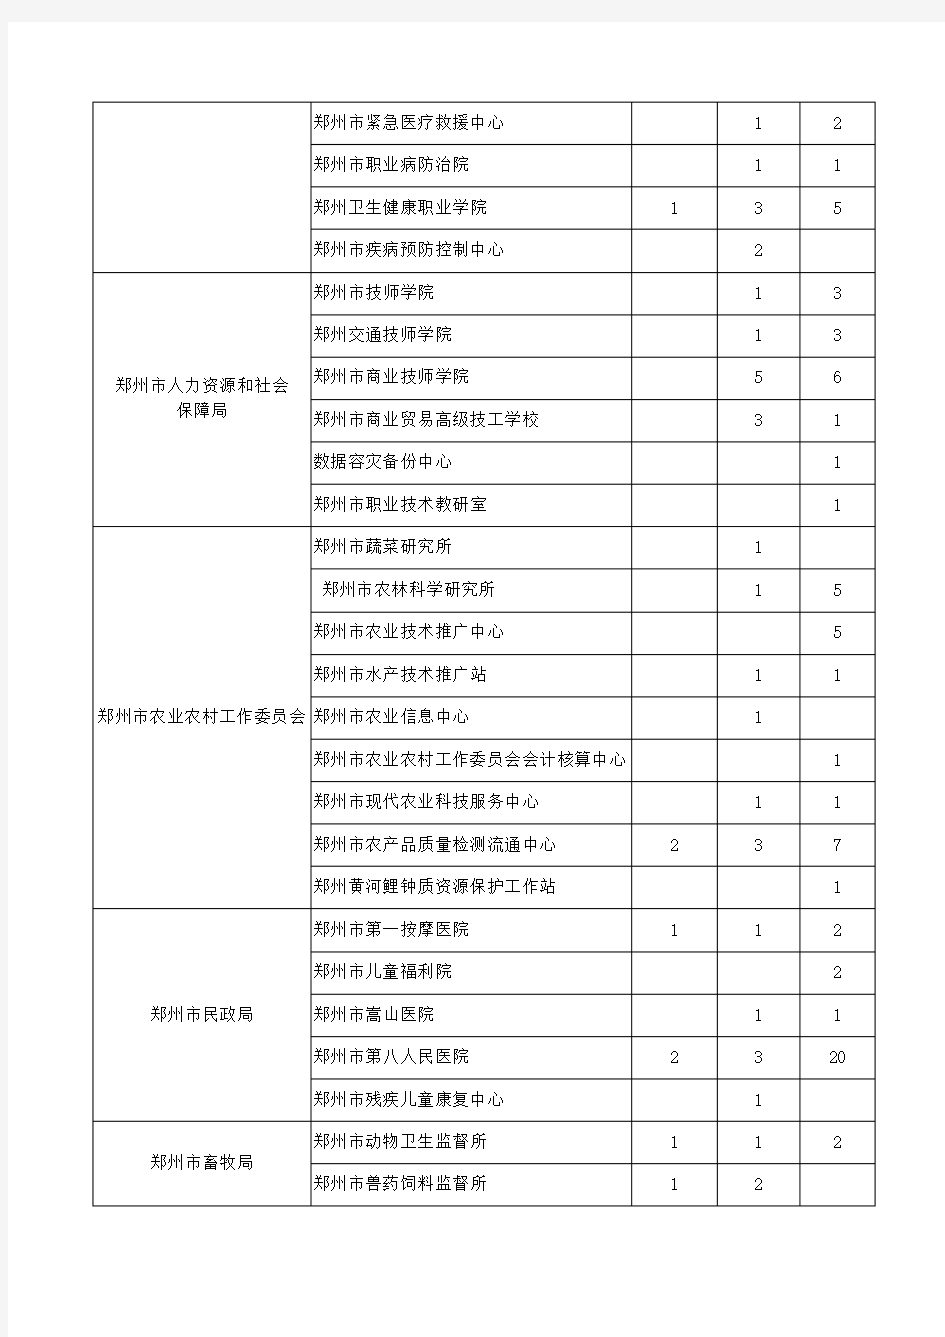 2018年度郑州市事业单位职称评聘计划公示(第一批)